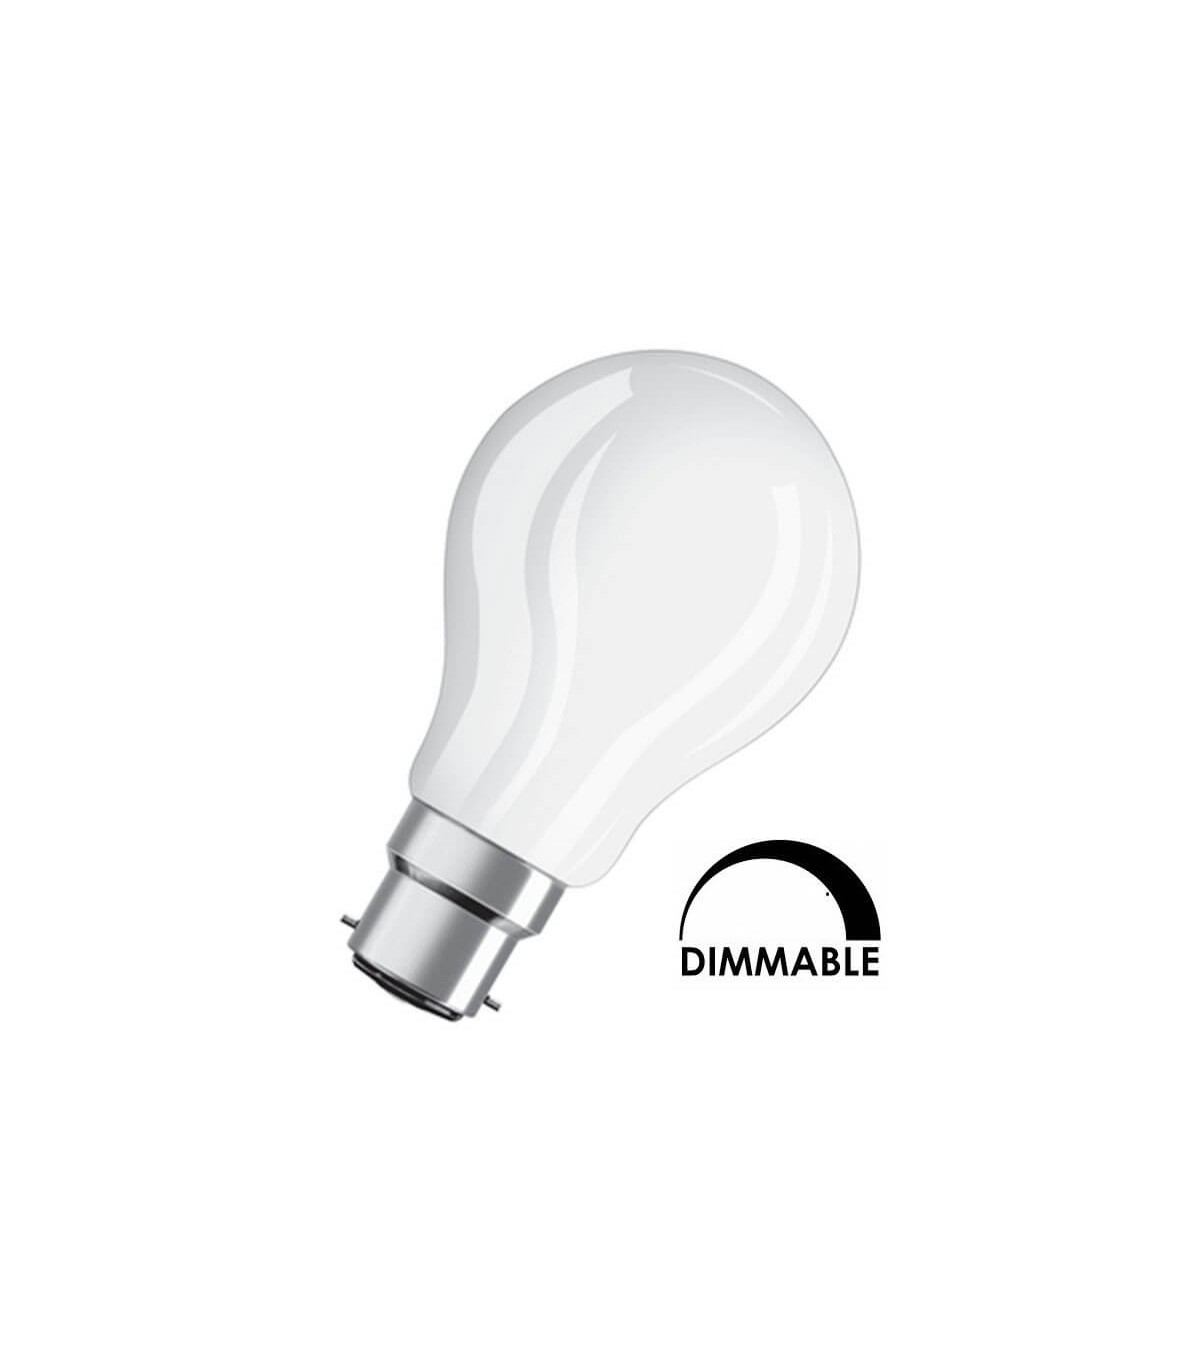 OSRAM LED BASE CLASSIC A / Lampe LED, ampoule de forme classique